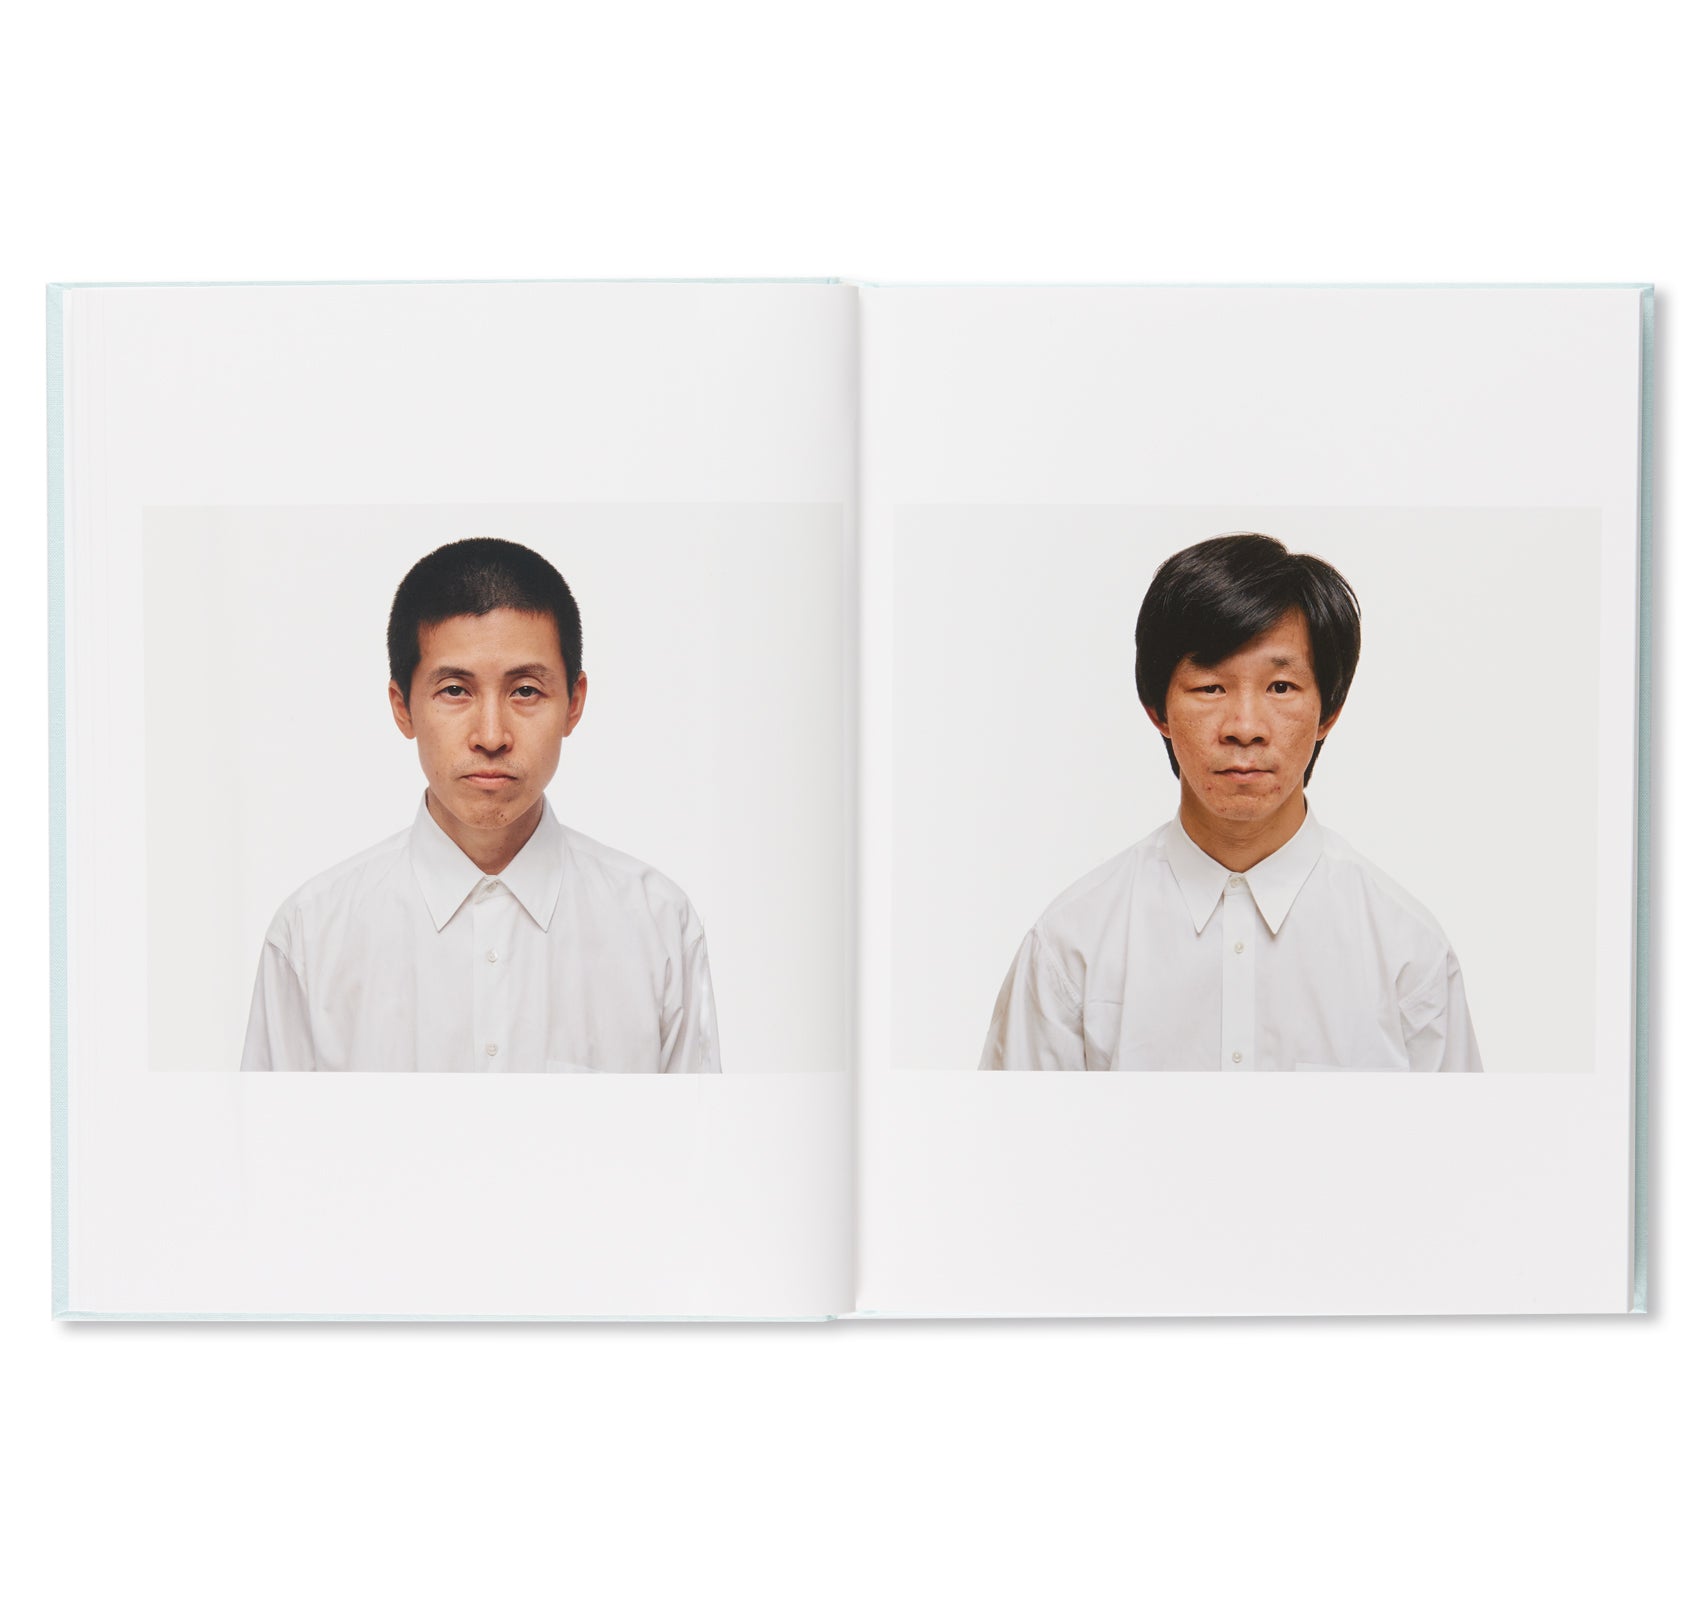 THE JOY OF PORTRAITS by Keizo Kitajima